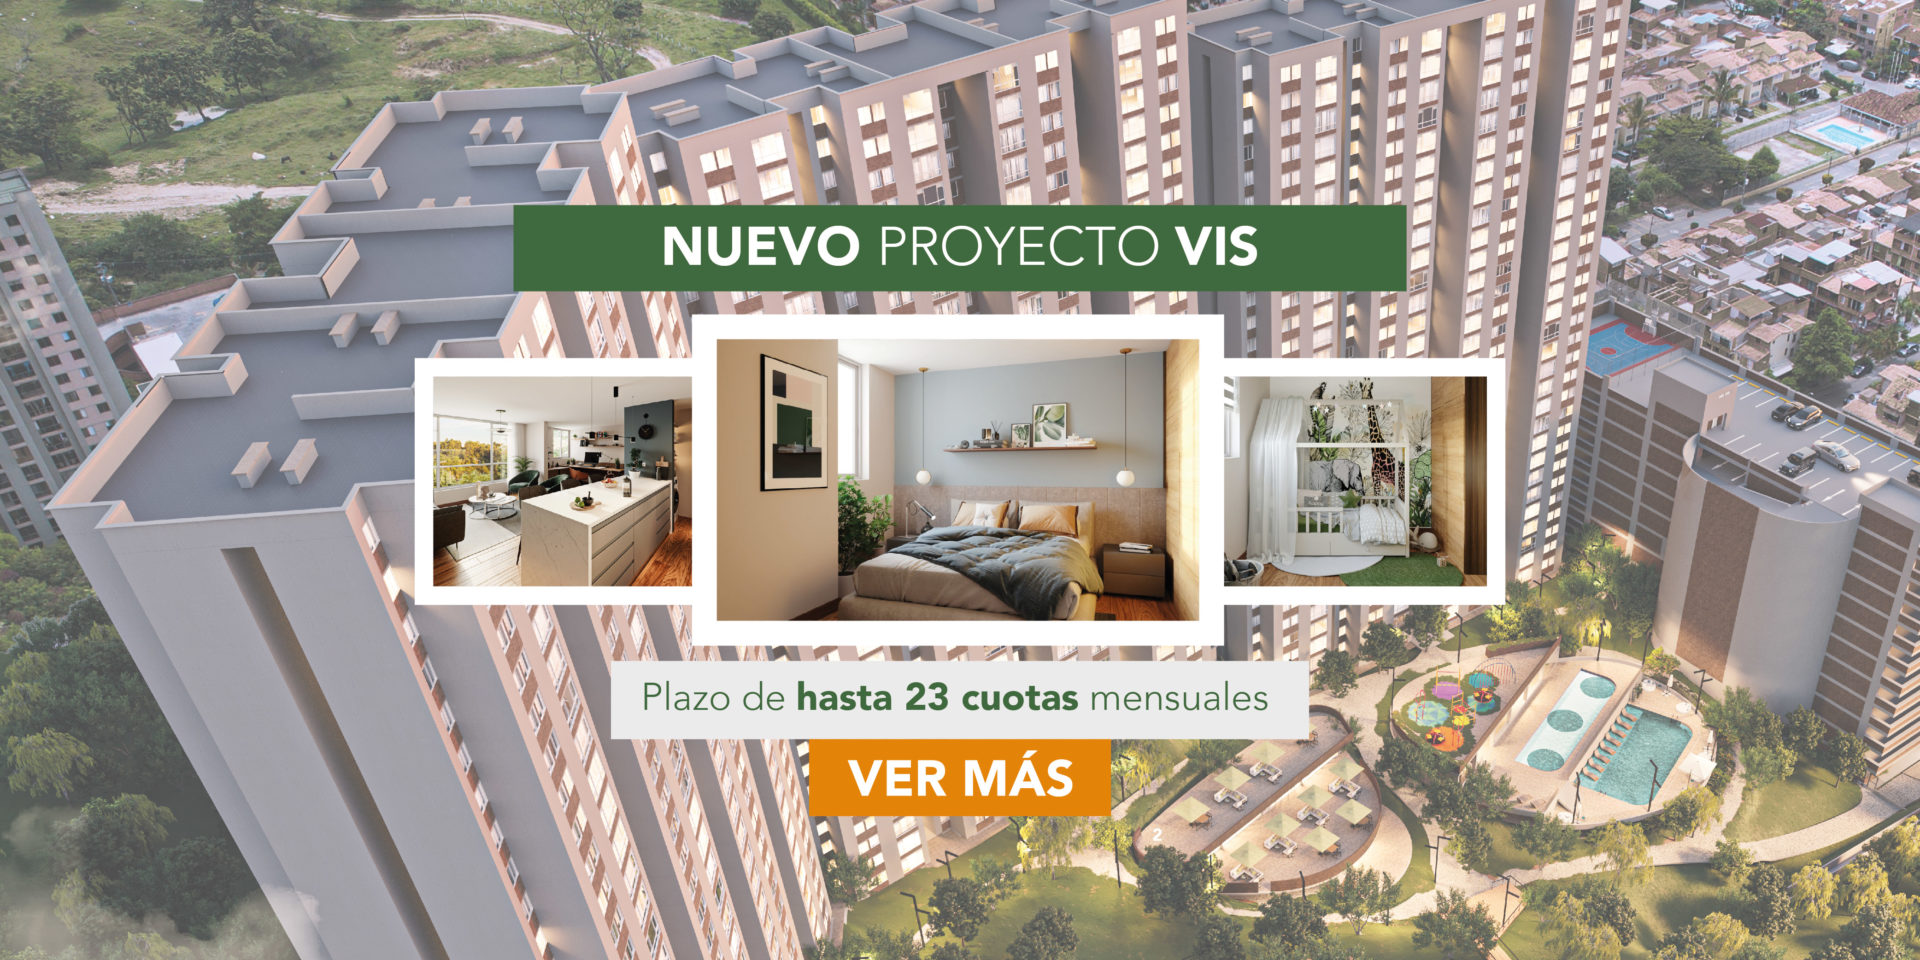 Venta de Apartamentos y Proyectos de Vivienda en Bello El Trapiche - Antioquia